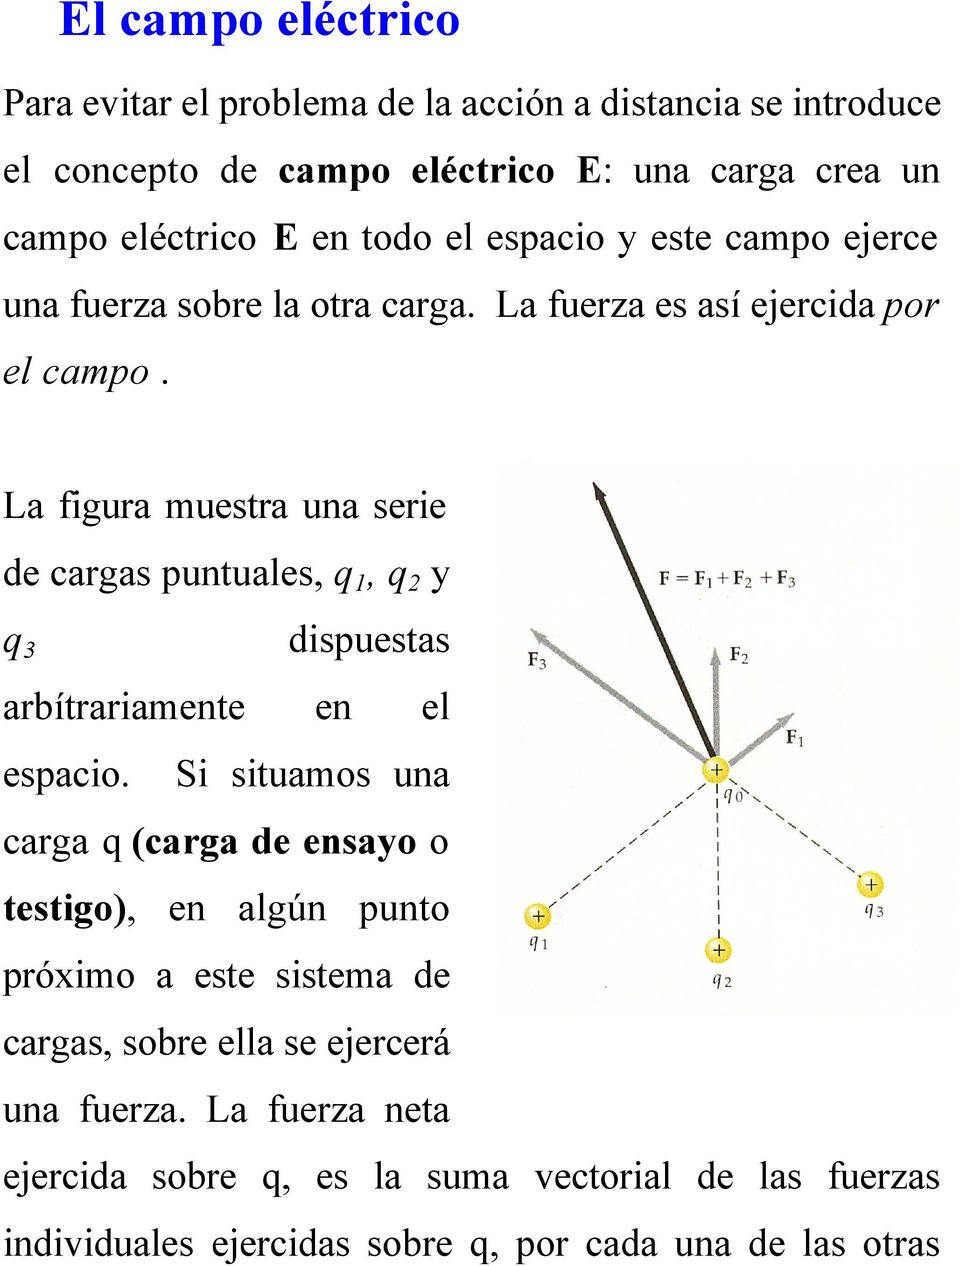 La figura muestra una serie de cargas puntuales, q 1, q 2 y q 3 dispuestas arbítrariamente en el espacio.